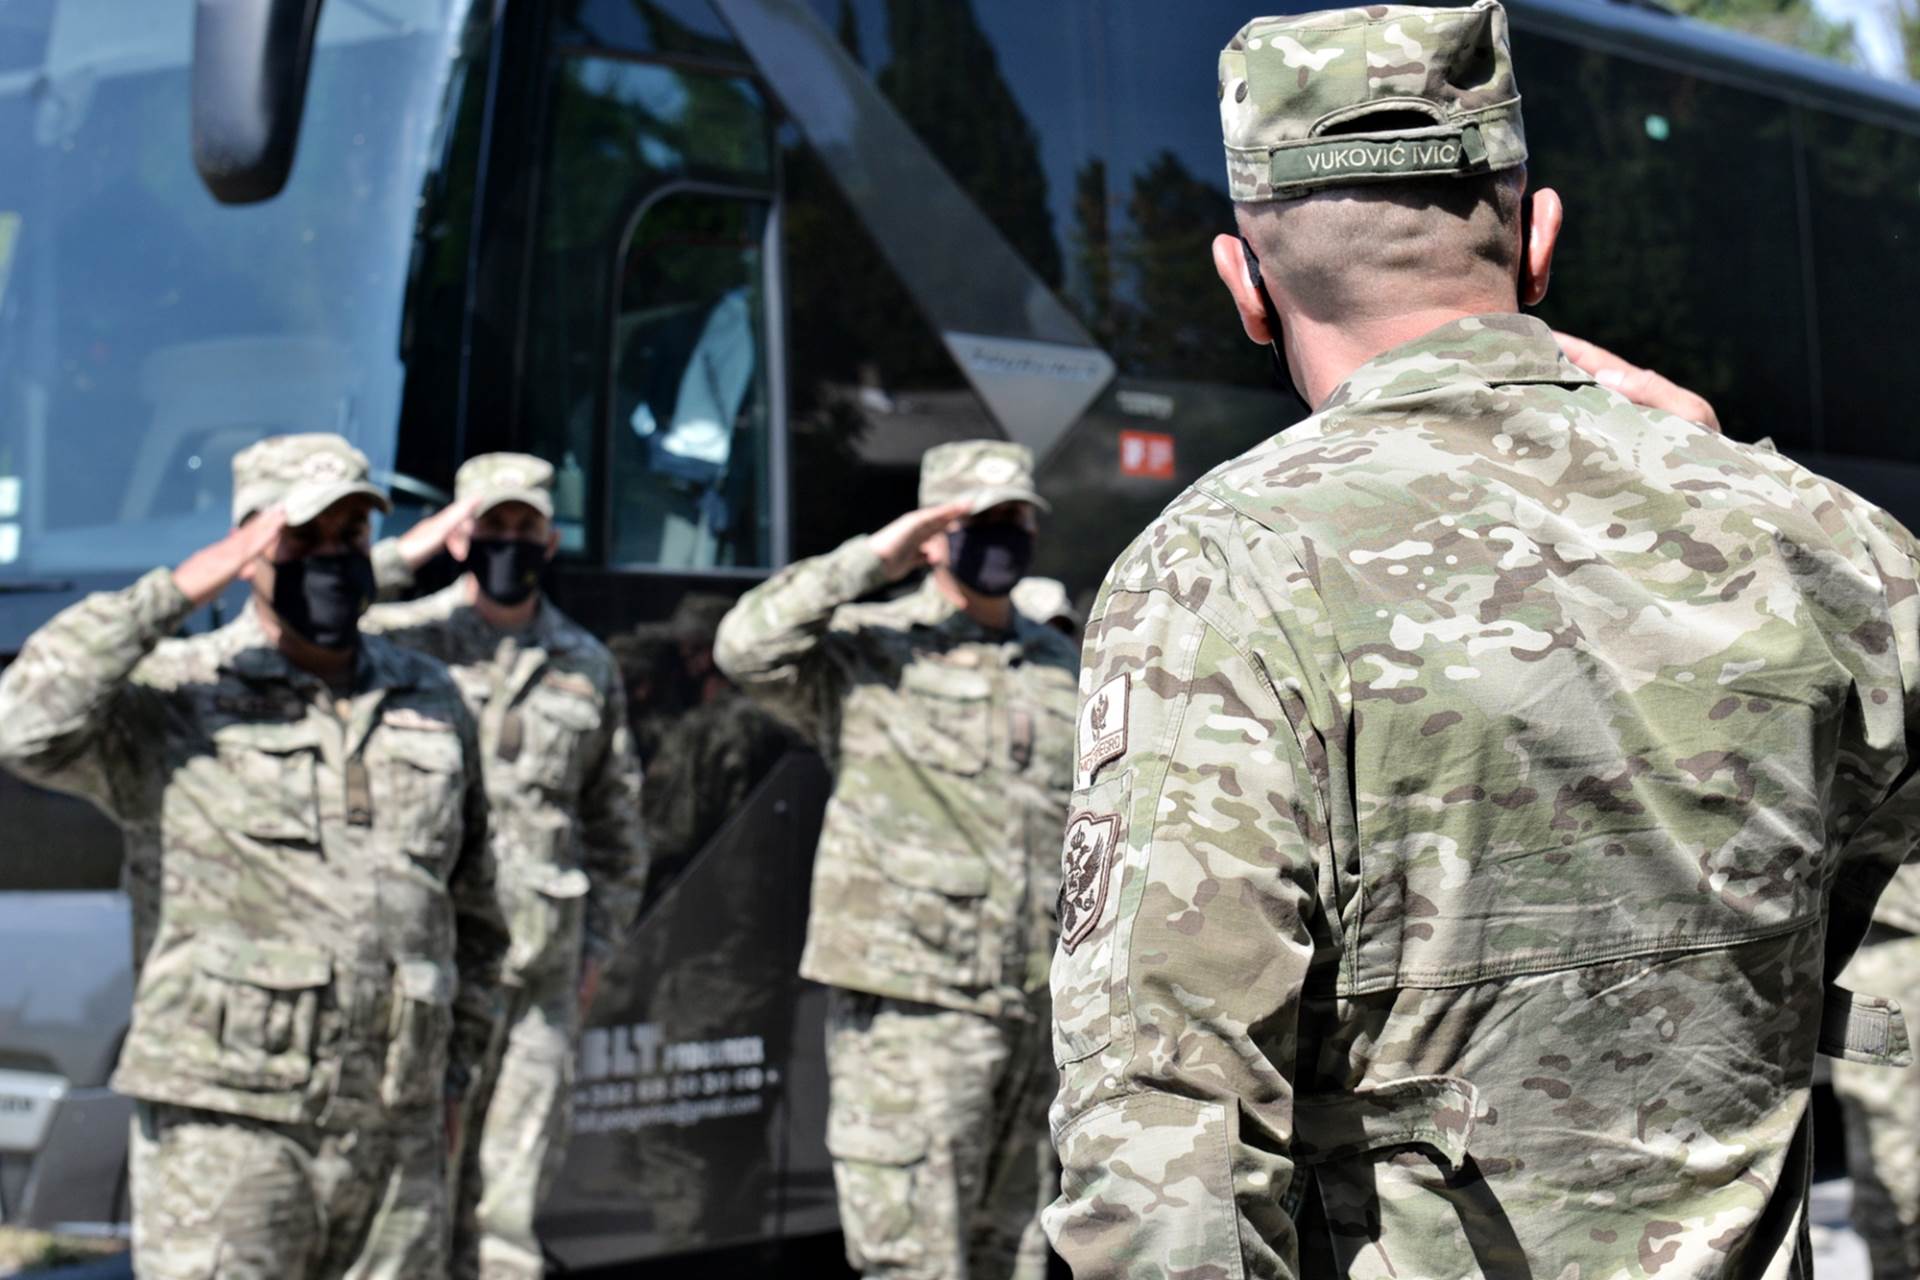  Crnogorski vojnici završili učešće u misiji Odlučna podrška u Avganistanu 